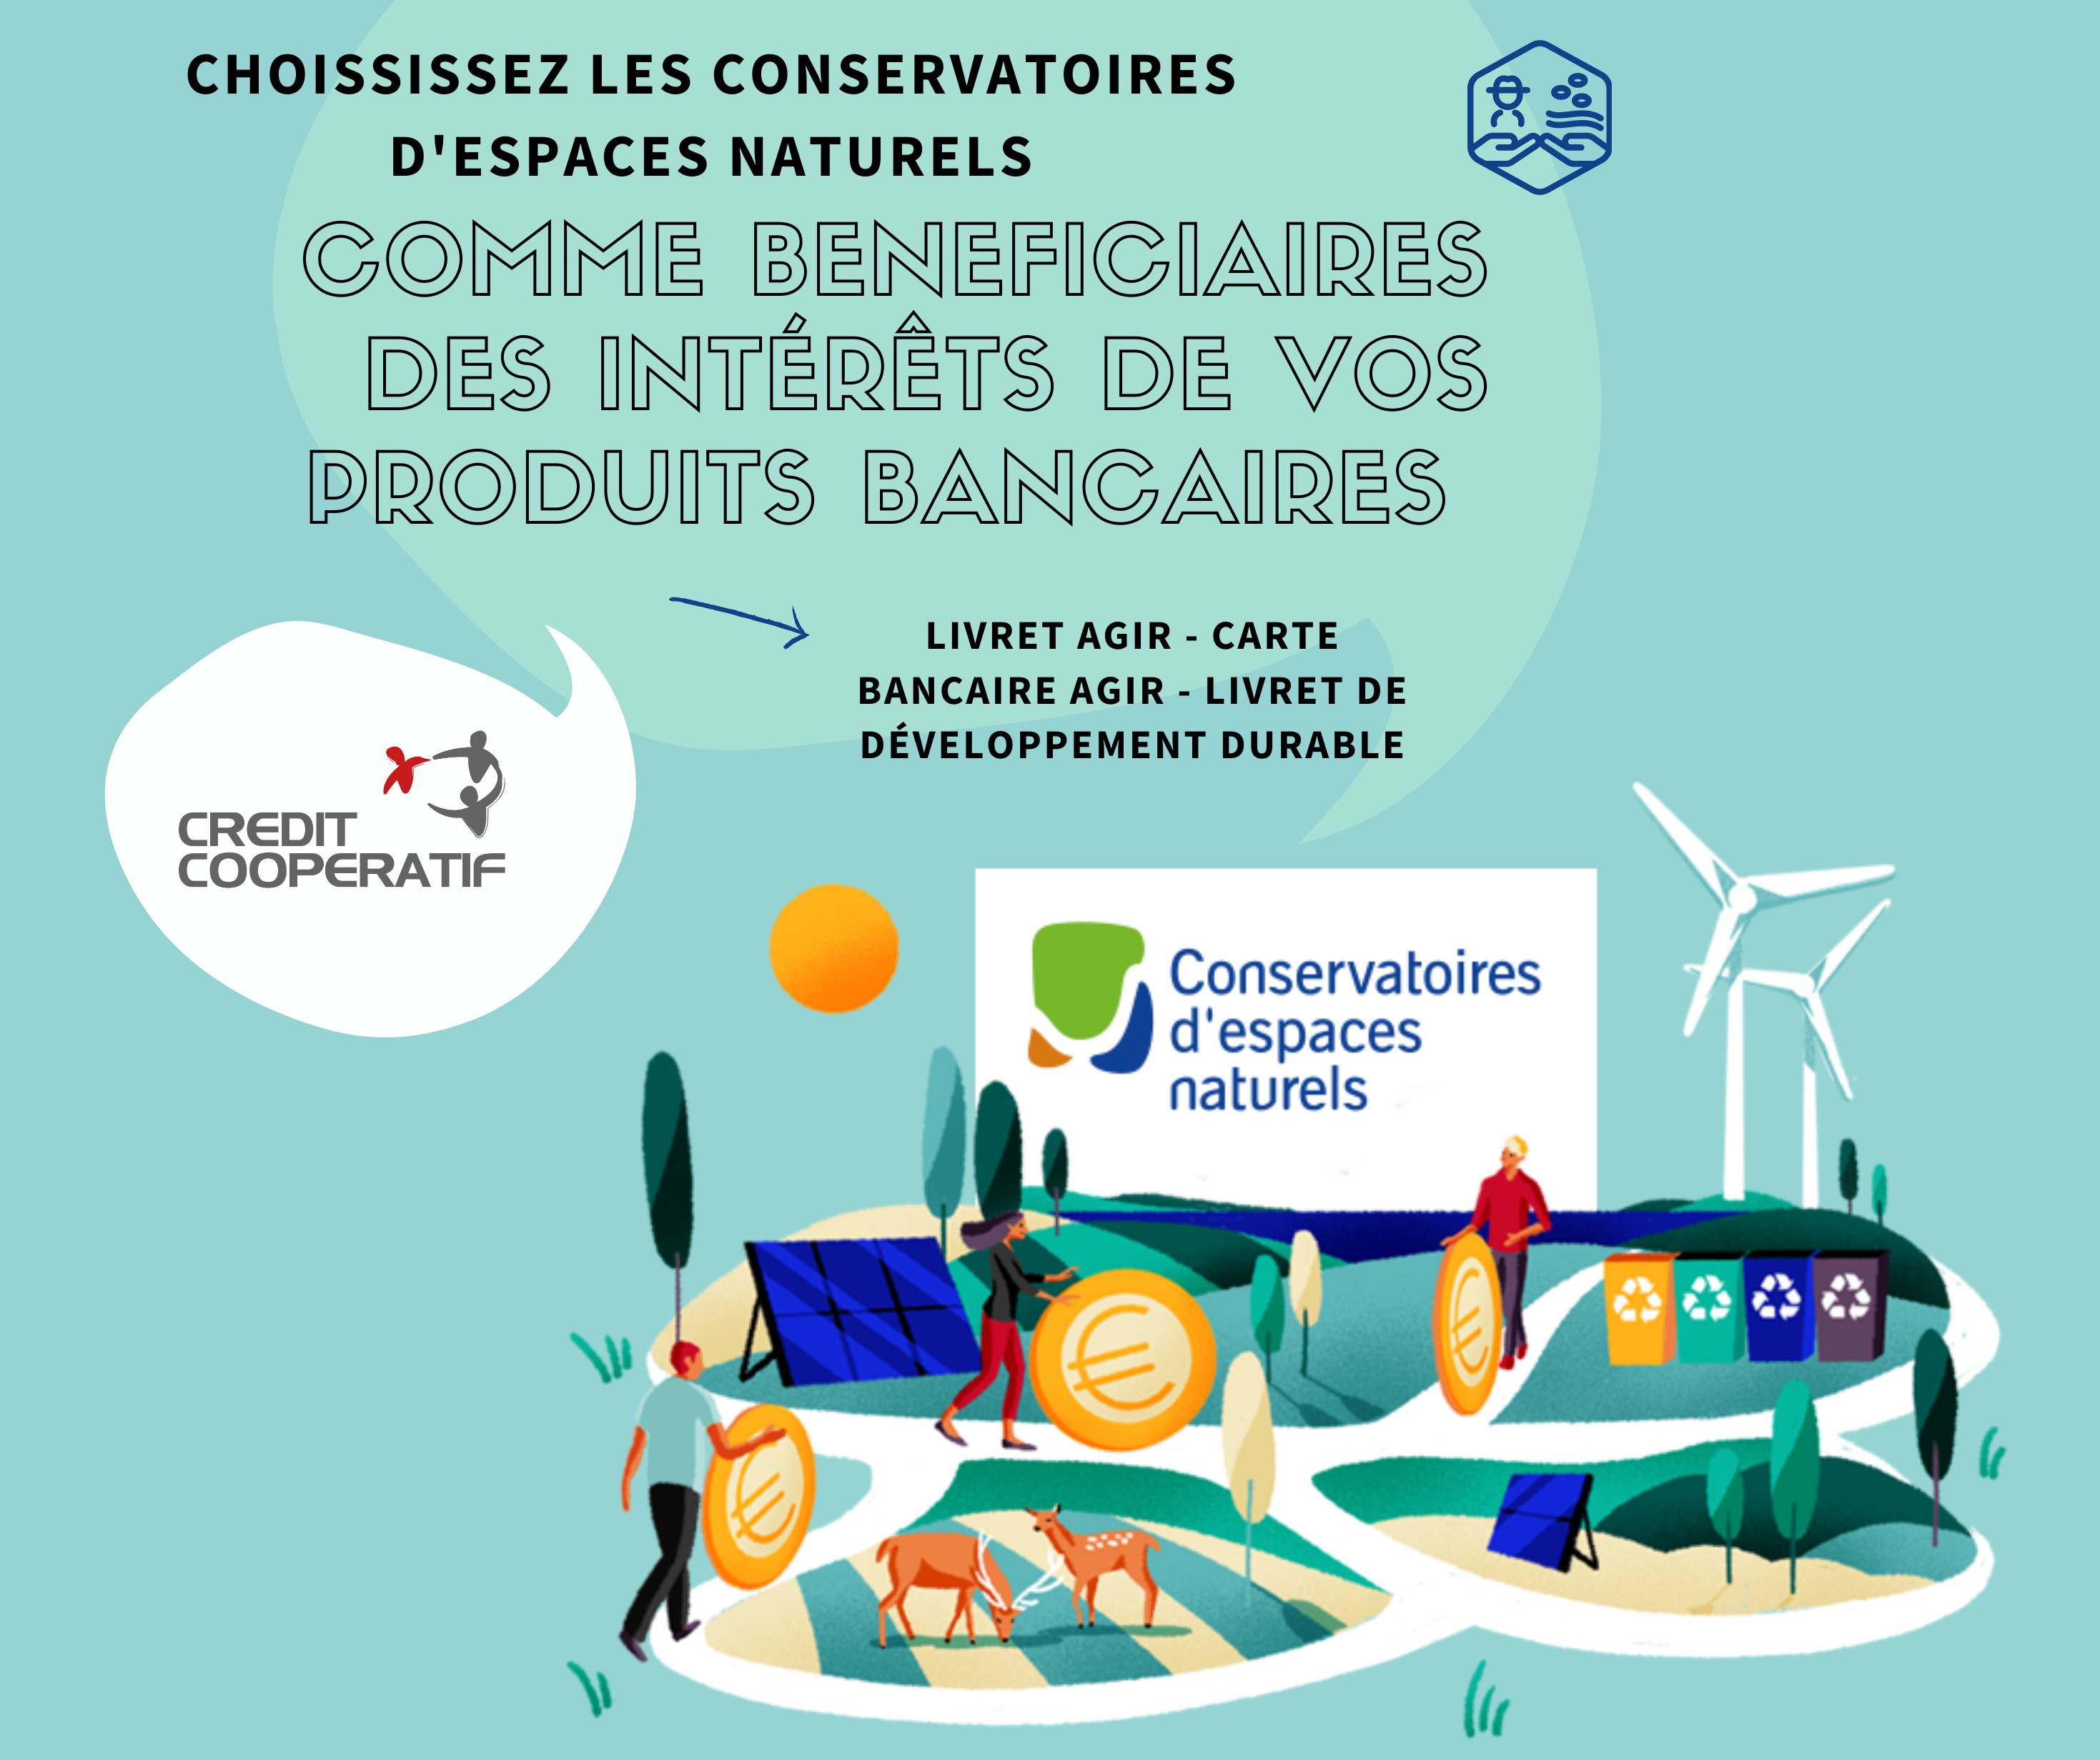 Plus de 3 000 euros de dons déjà reversés à la Fédération des Conservatoires d’espaces naturels grâce aux produits engagés du Crédit Coopératif !